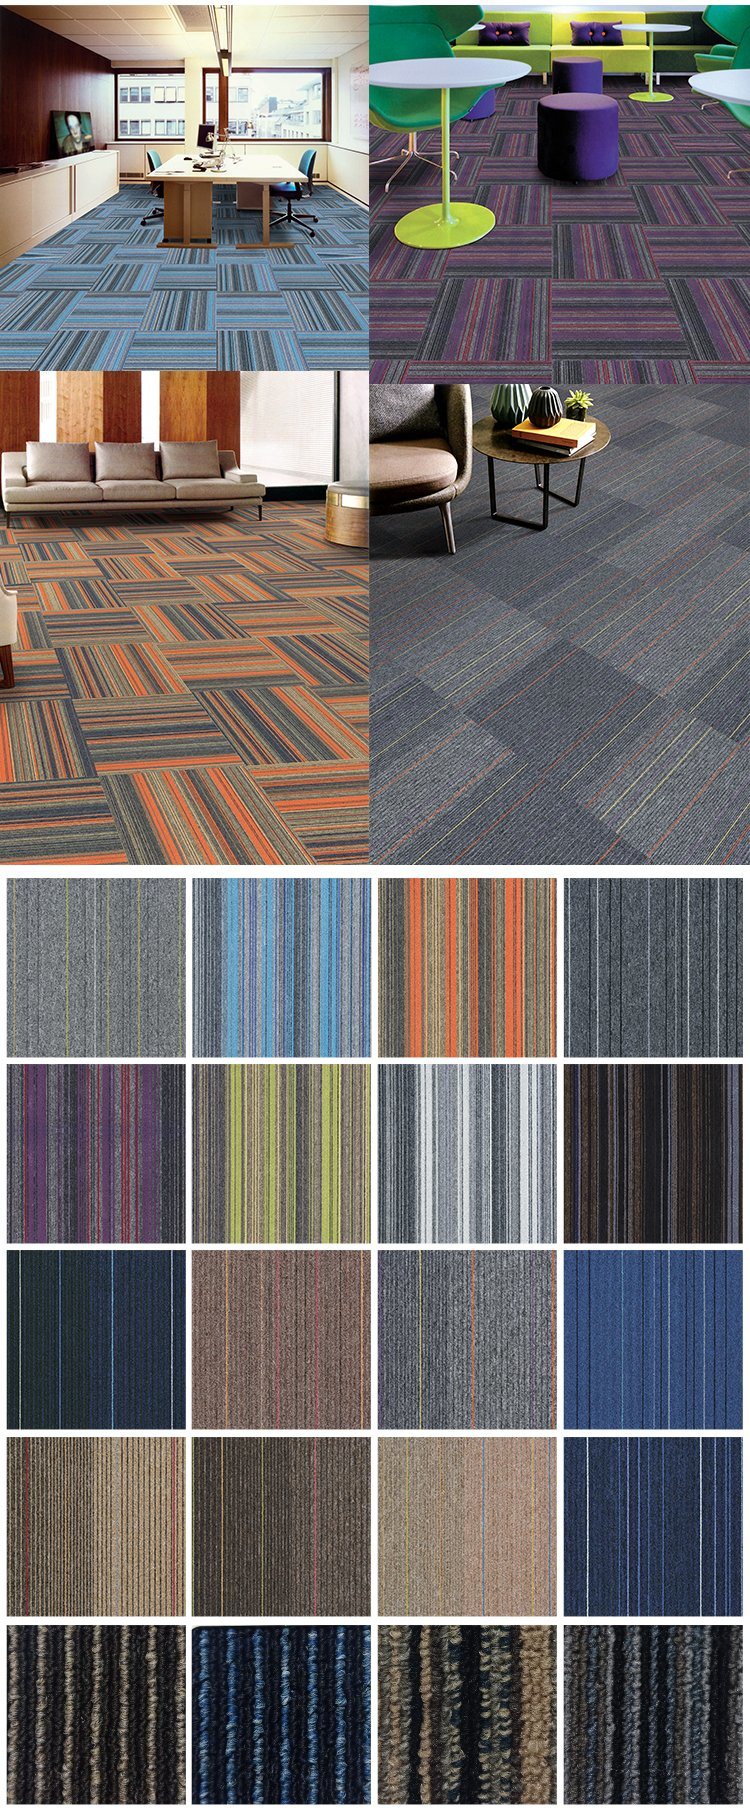 Square Carpet Commercial Office Carpet Tiles